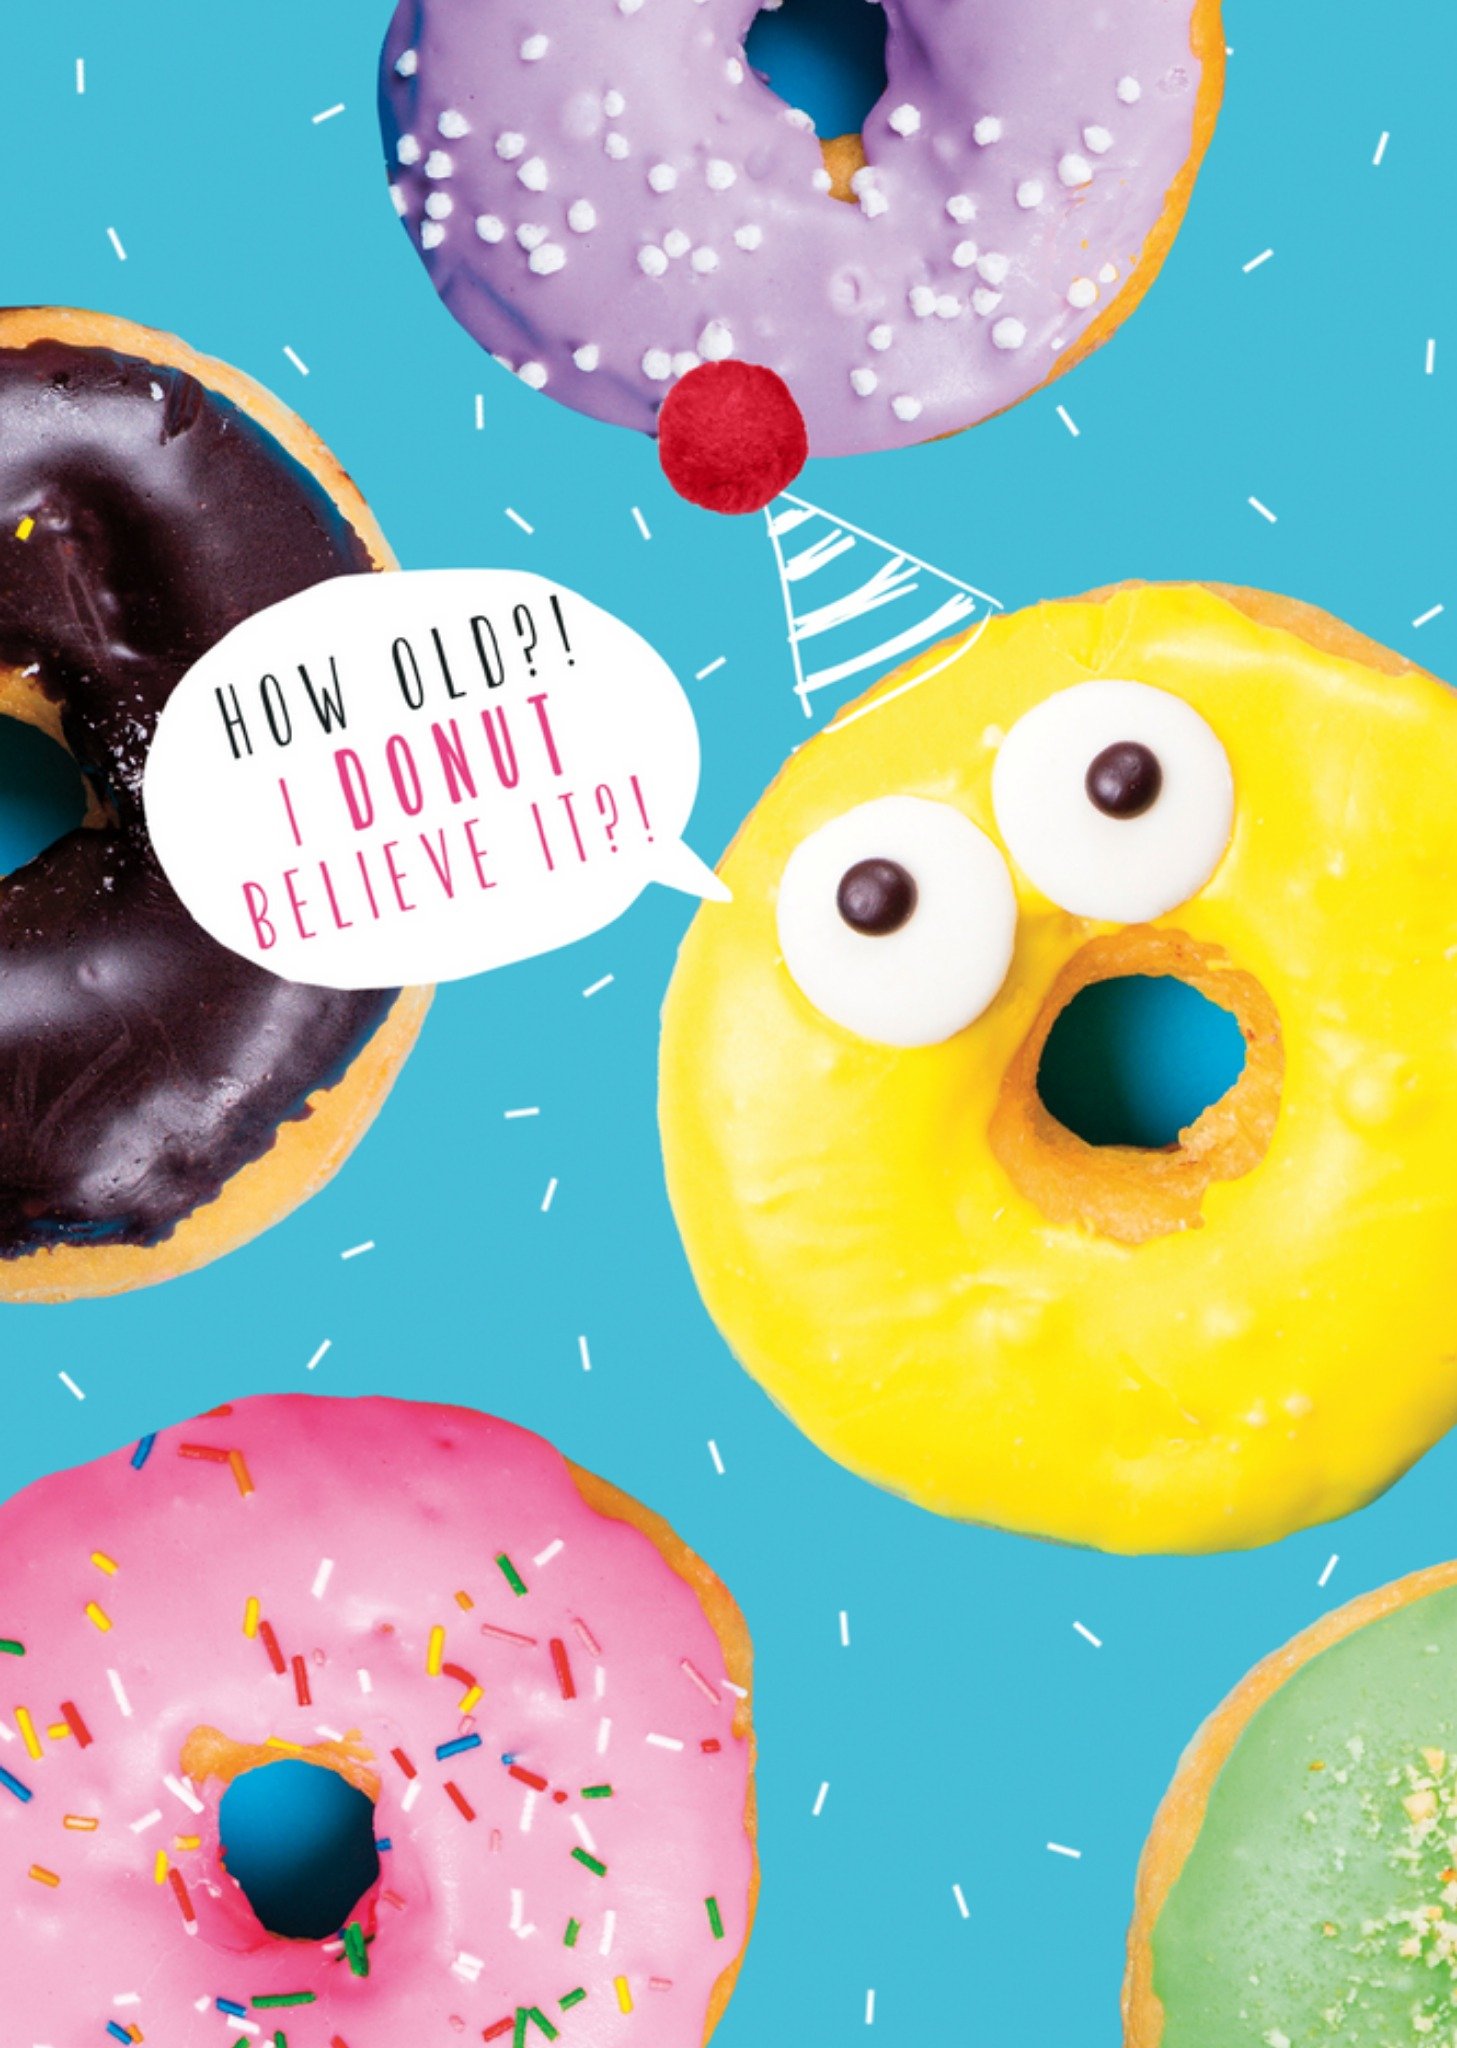 UK Greetings - Verjaardagskaart - Donut believe it